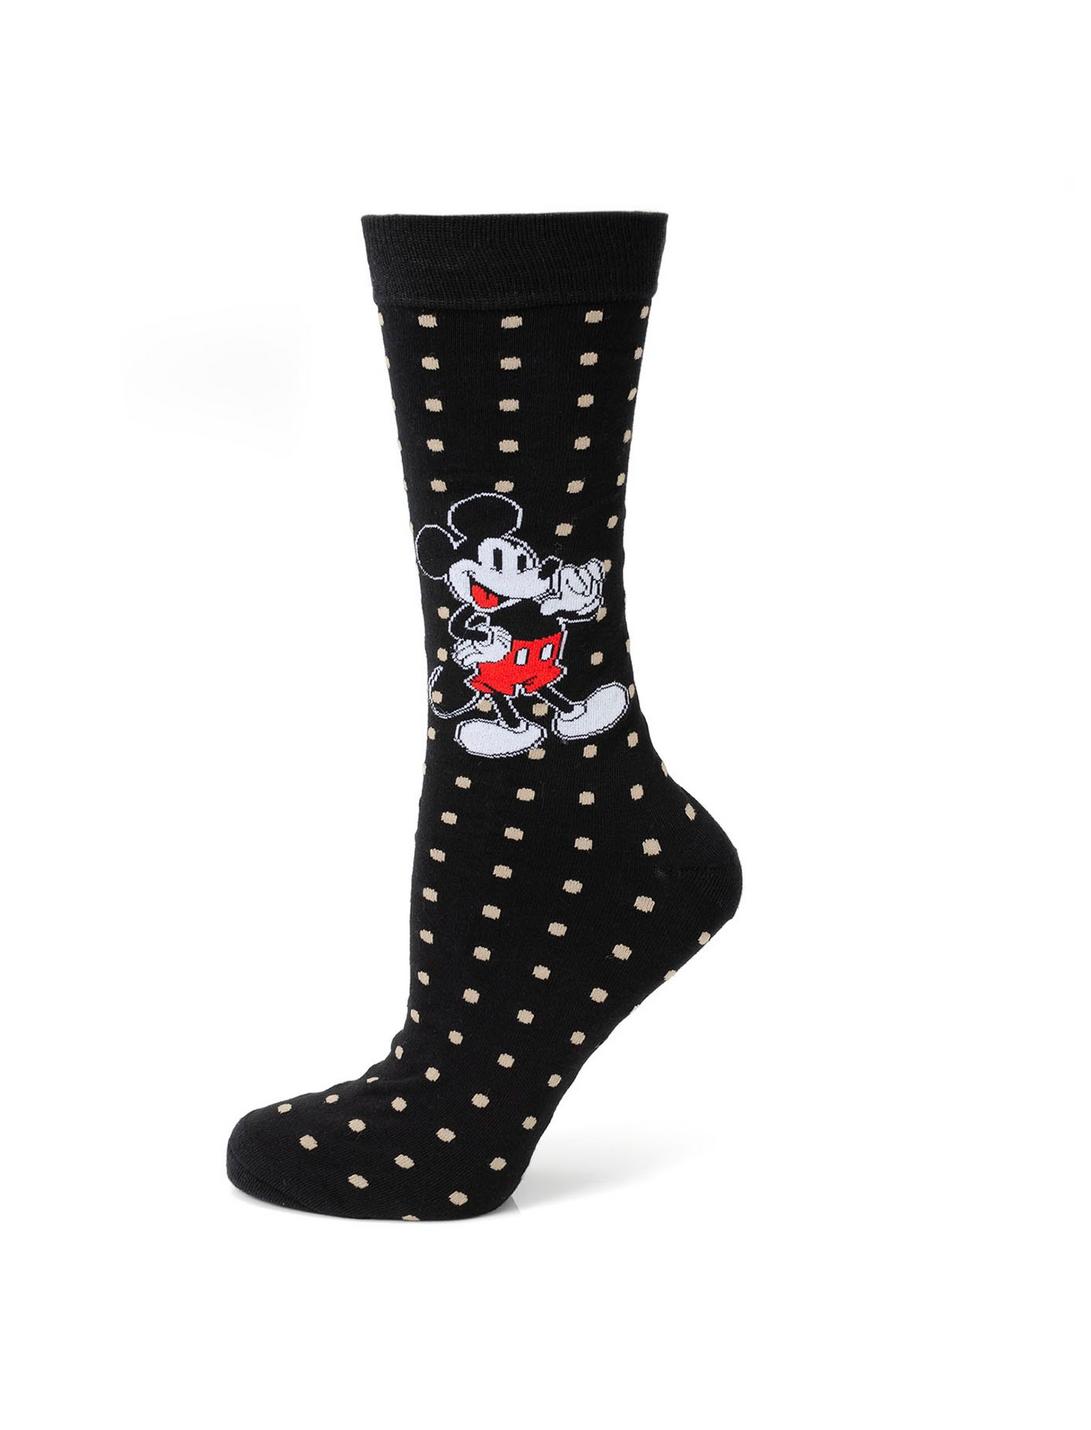 Disney Mickey Mouse Polka Dot Socks, , hi-res